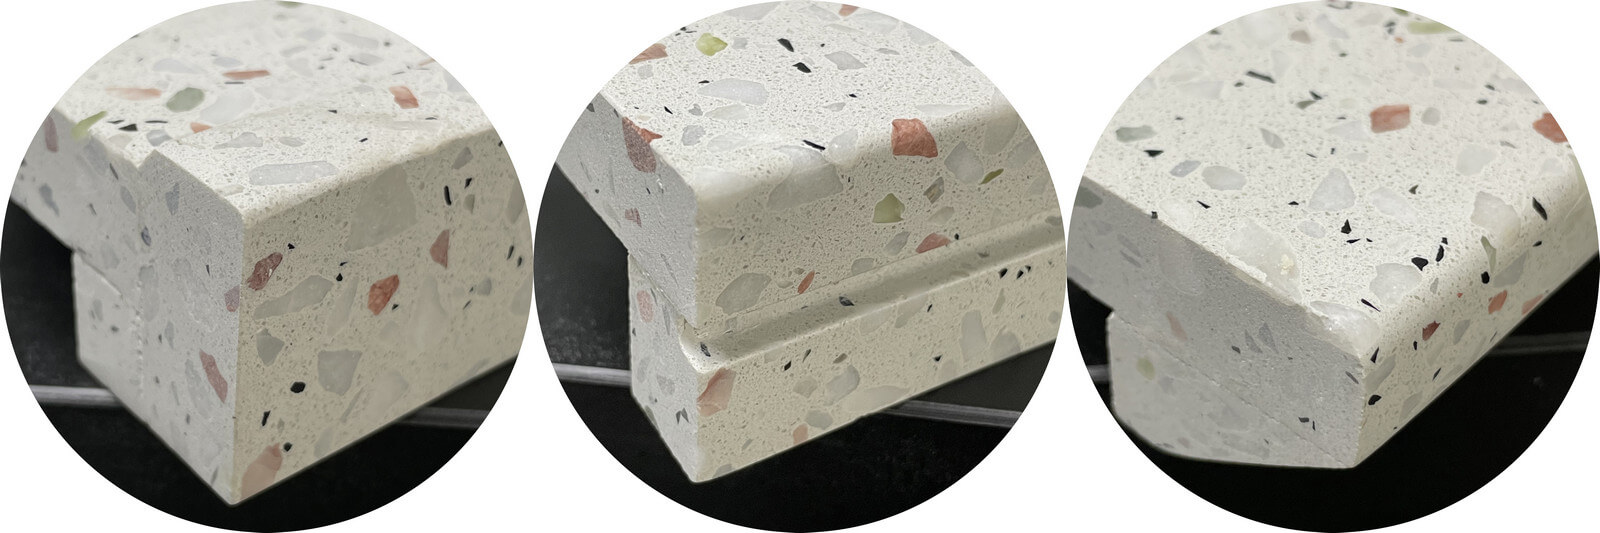 Quartz Stone, Marble & Grainte Countertops Fabrication For Hotel Condo Project 6